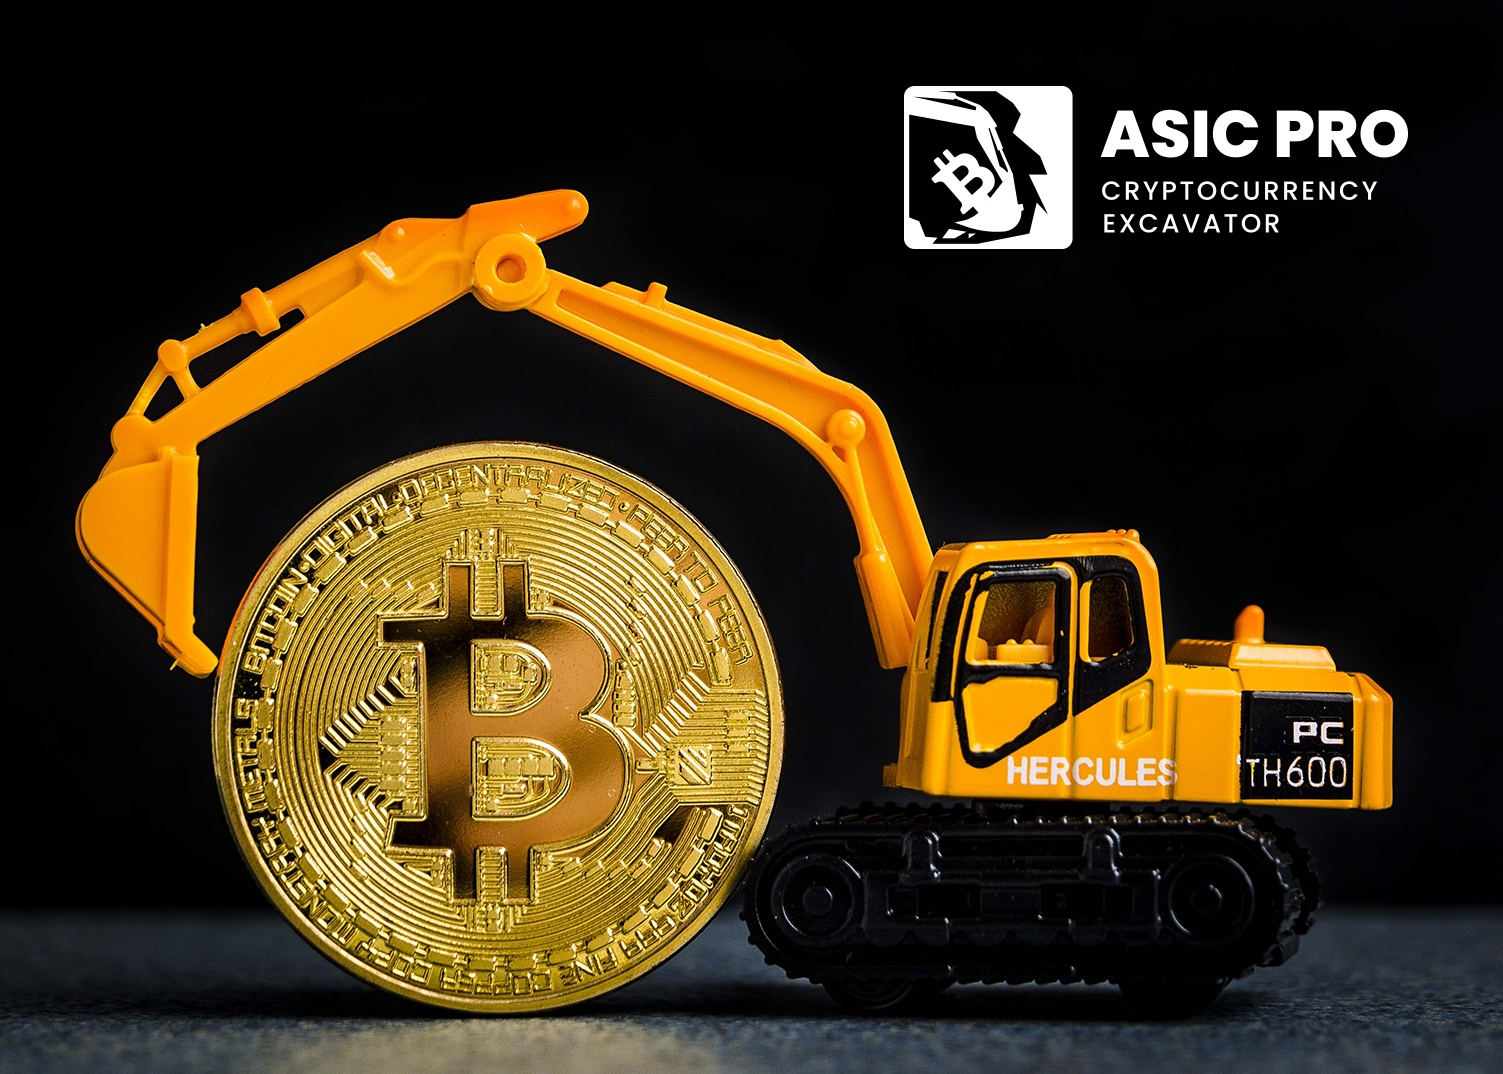 Creuseur de crypto-monnaies Asic Pro – le plus puissant des mineurs de crypto-monnaies